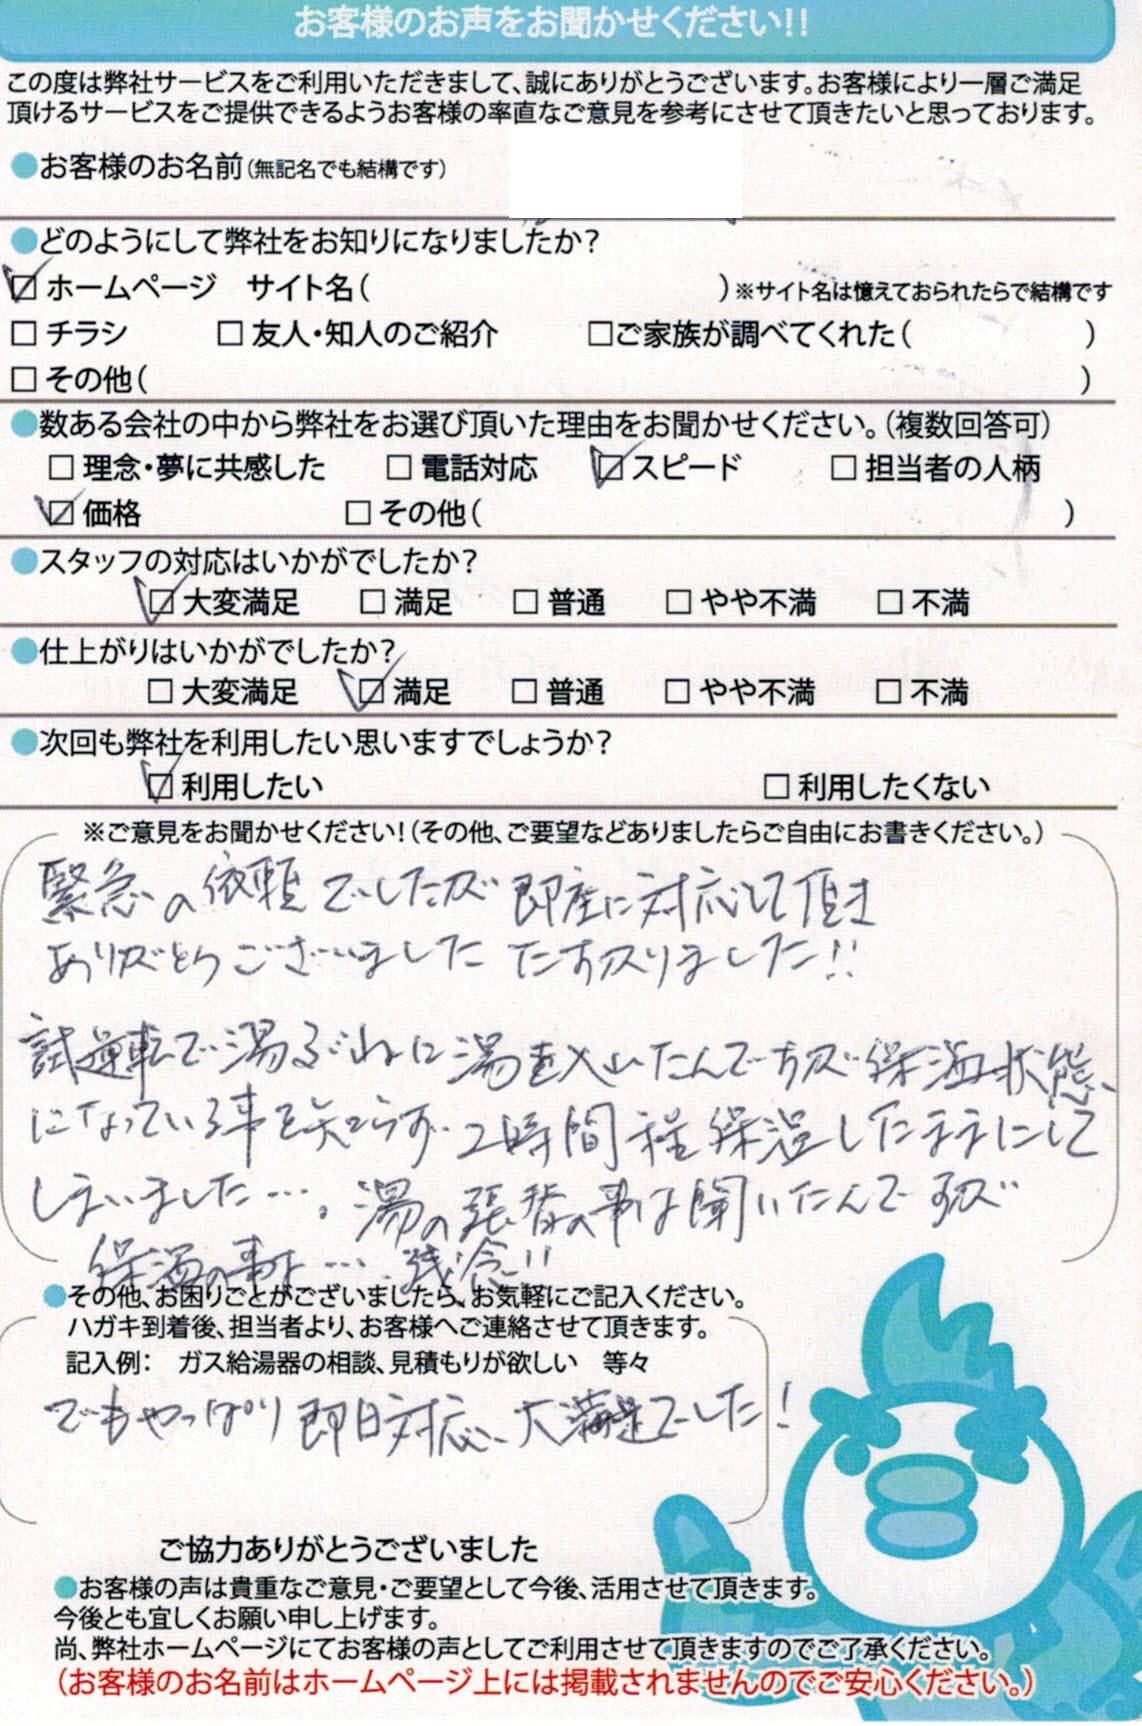 【ハガキ】愛知県犬山市ガス給湯器交換工事お客様の声【アンシンサービス24】